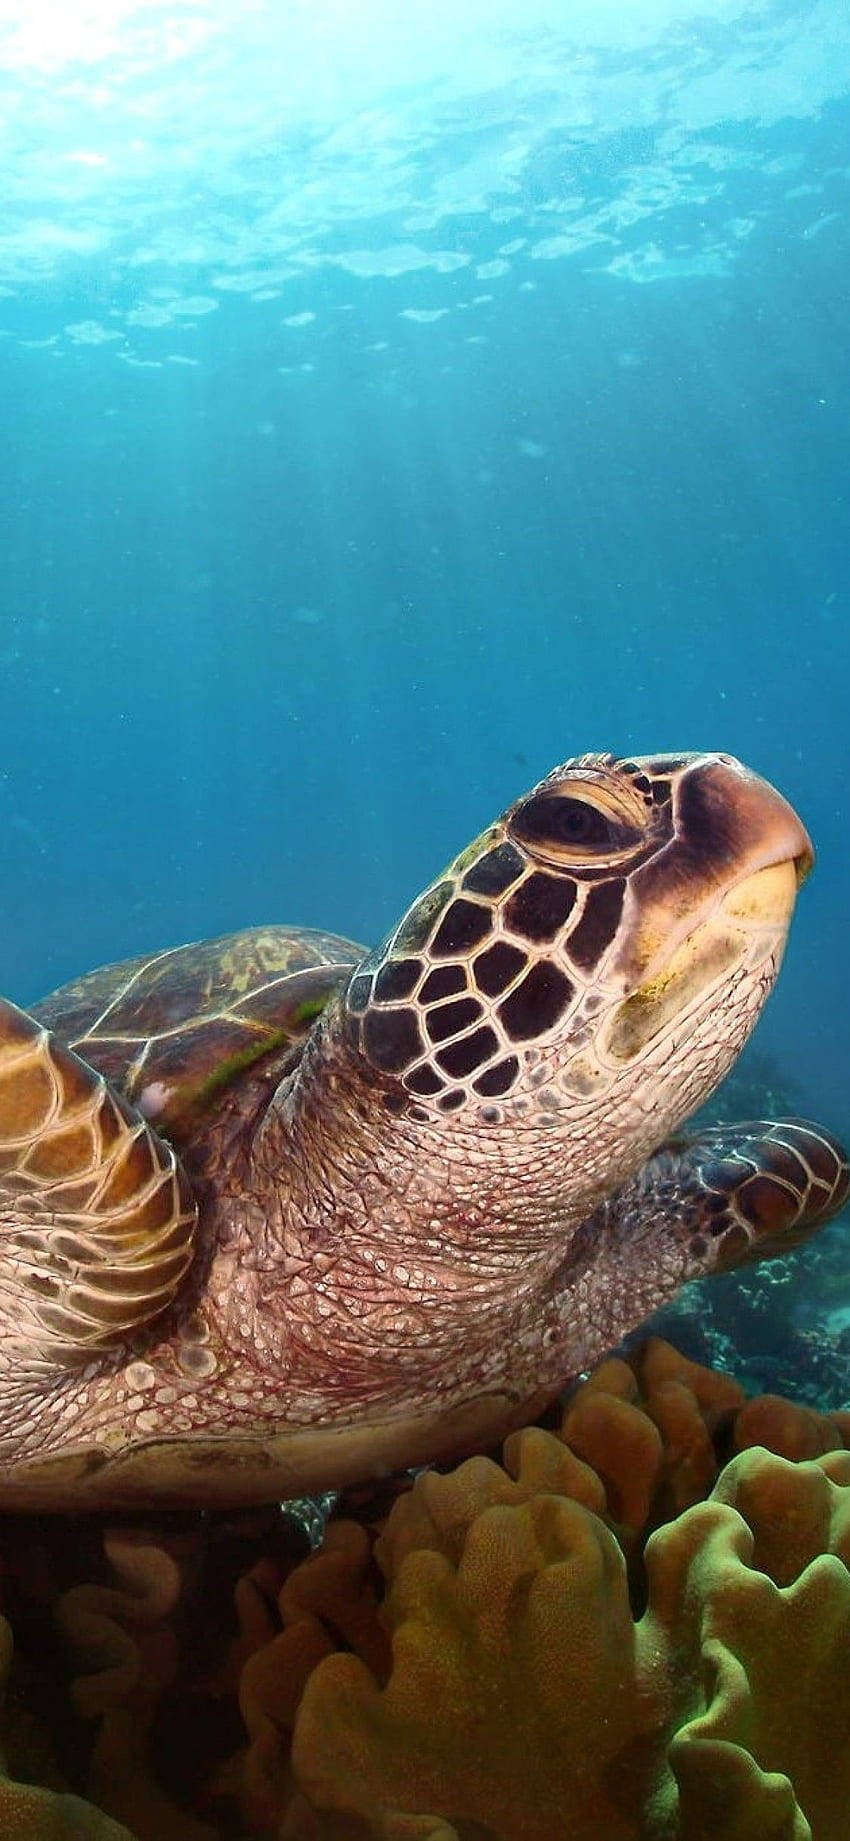 Side Looking Sea Turtle iPhone Wallpaper